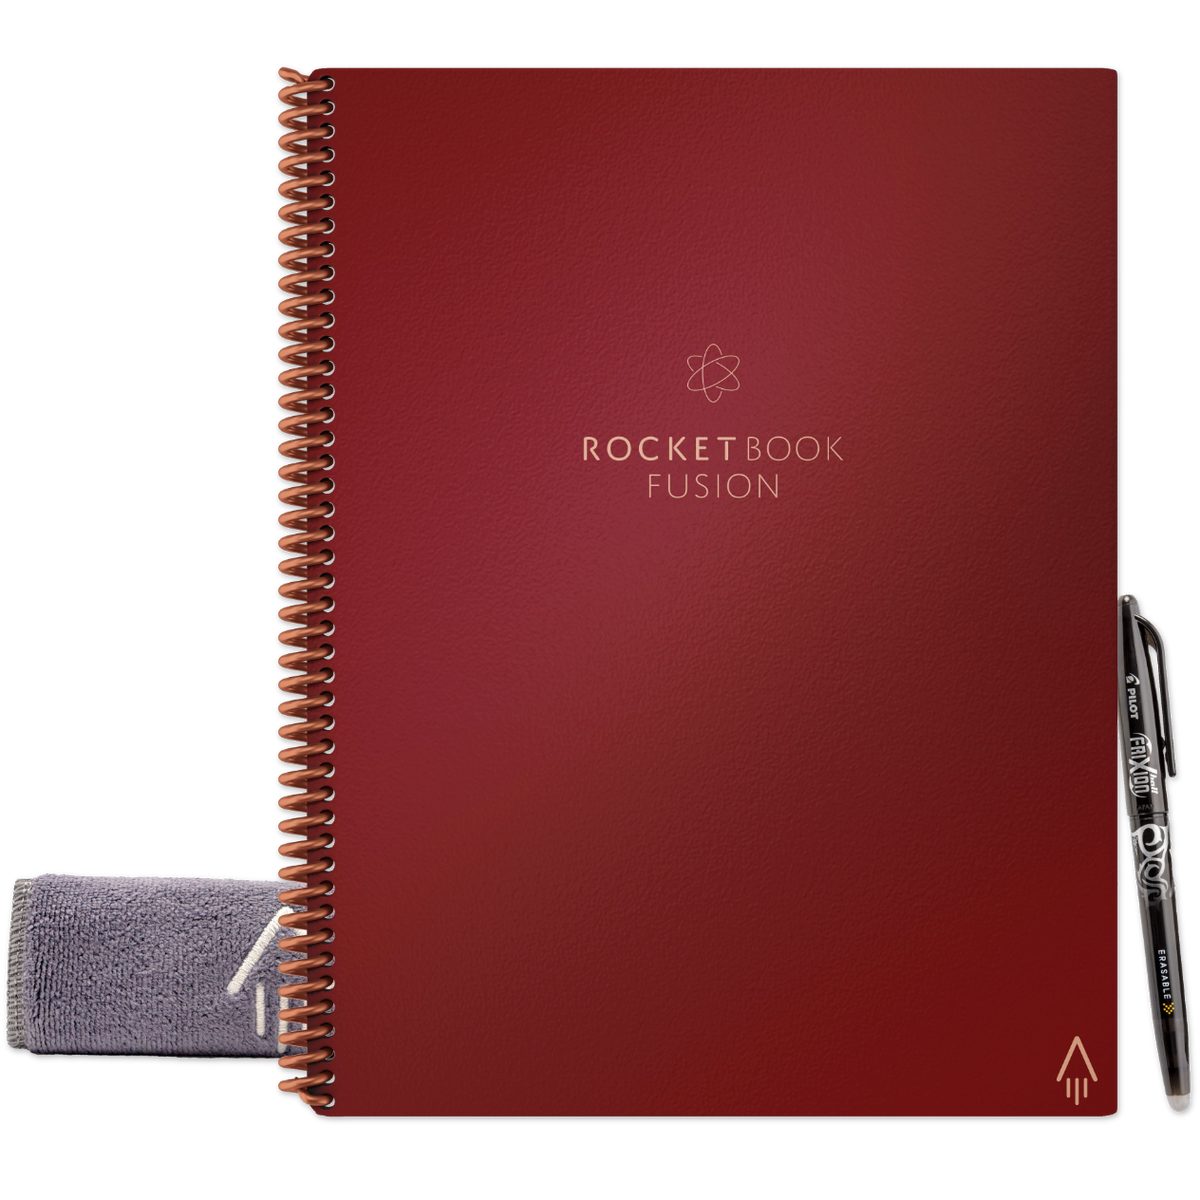 Rocket Tagging - mit Skizzenbuch und Everlast Rocketbook FUSION Book Notizbuch Symbol und App-Anbindung Notiz- Sky, Scarlet